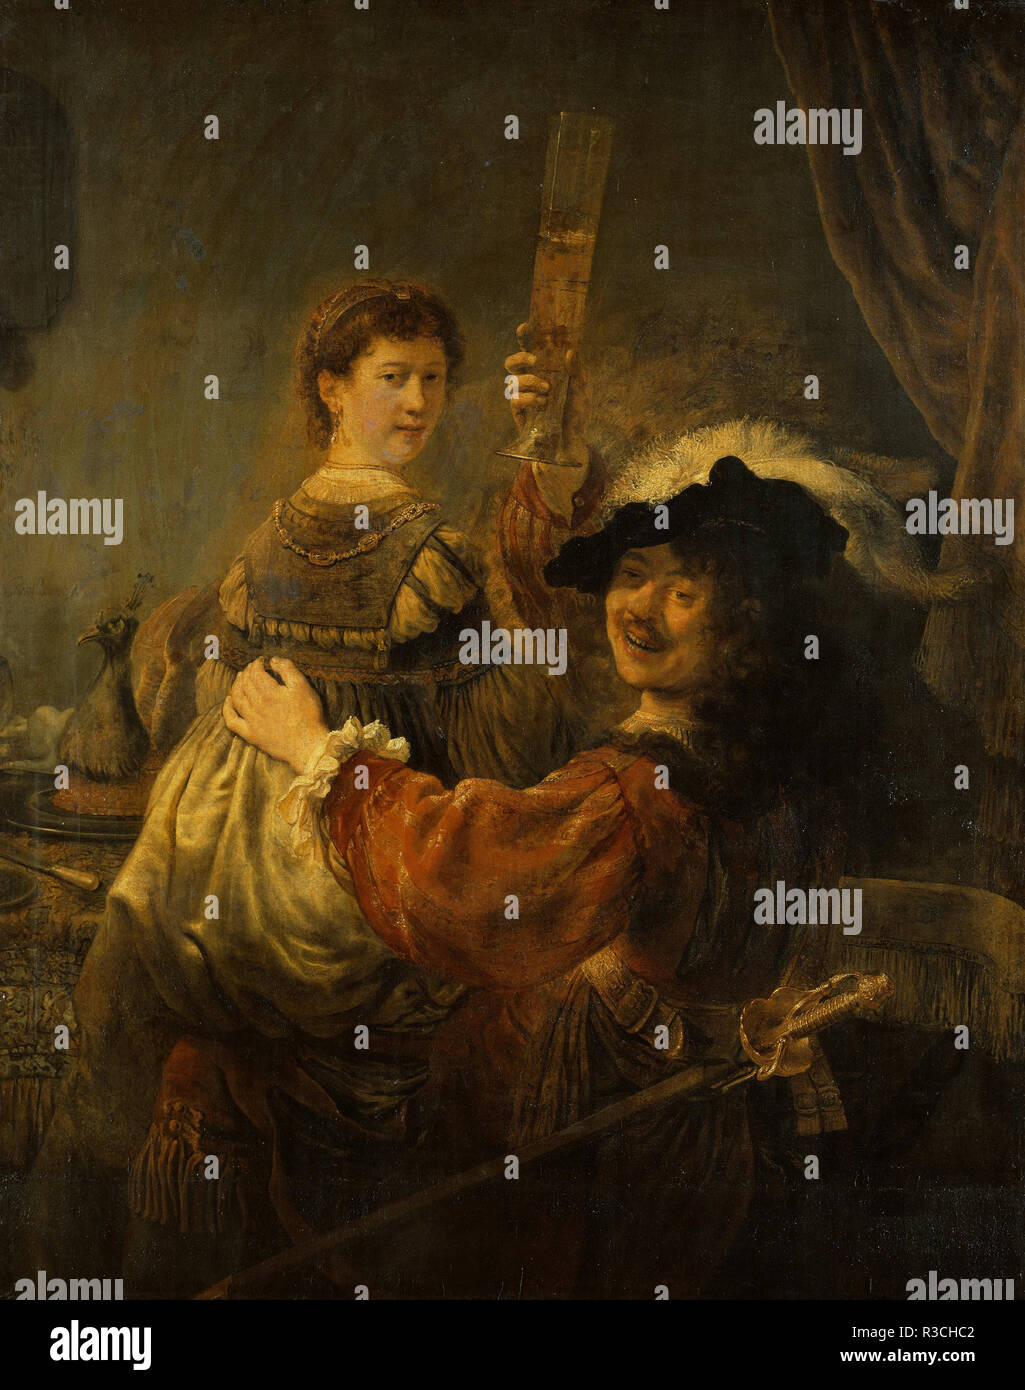 Rembrandt und Saskia in der Parabel vom Verlorenen Sohn. Datum/Zeit: Ca. 1635. Malerei. Öl auf Leinwand. Höhe: 1.610 mm (63.38 in); Breite: 1310 mm (51.57 in). Stockfoto